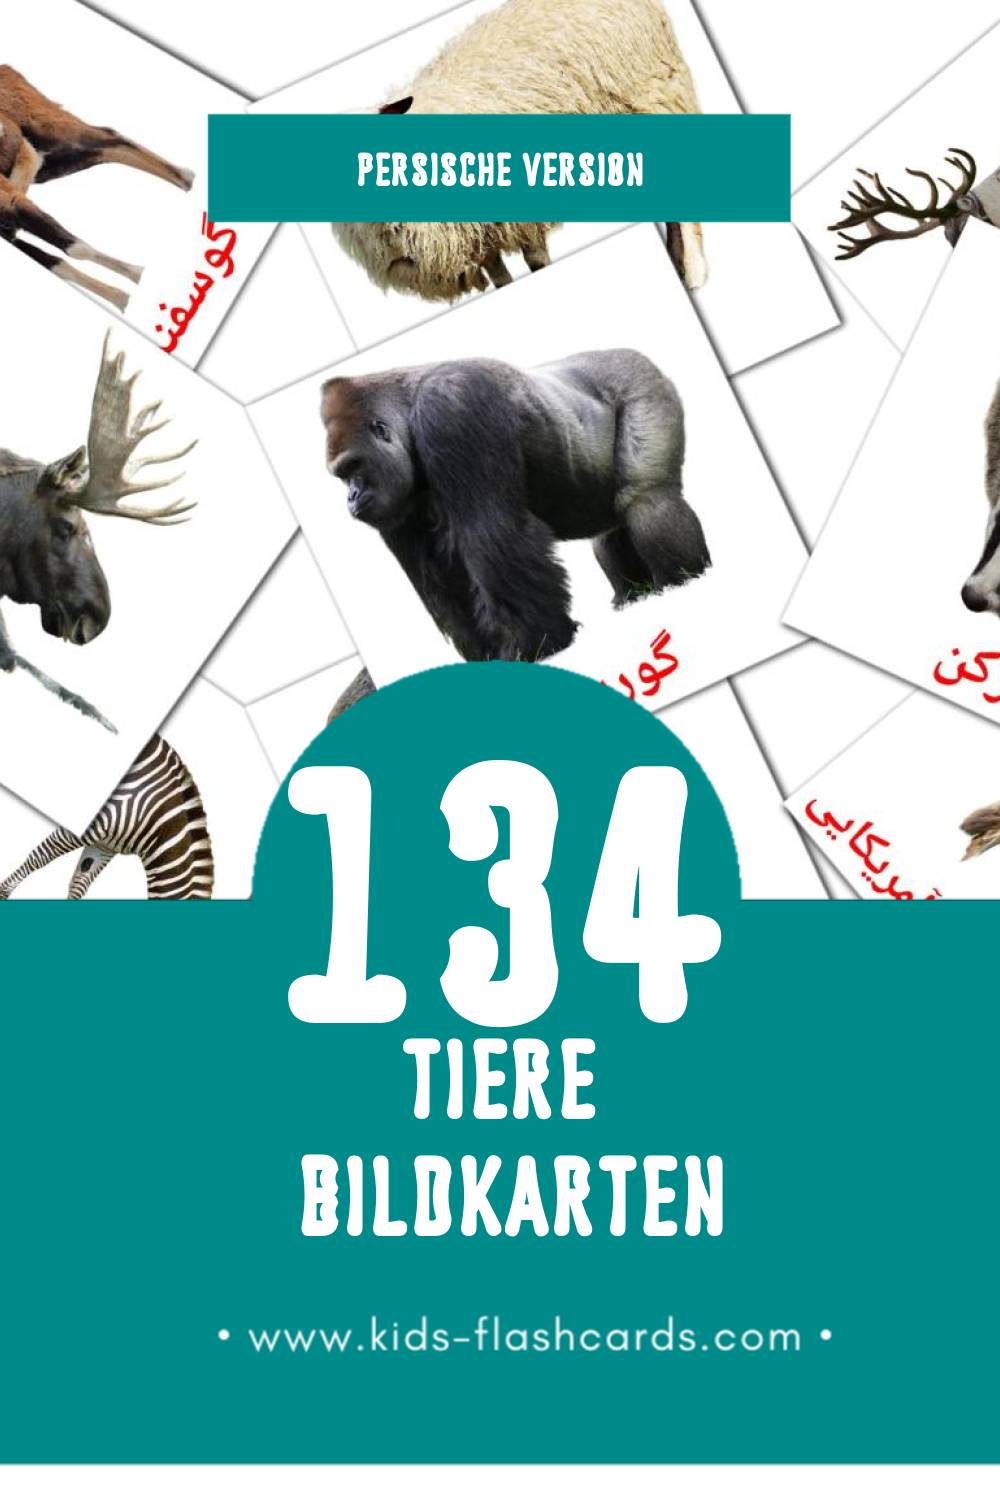 Visual حیوانات Flashcards für Kleinkinder (134 Karten in Persisch)